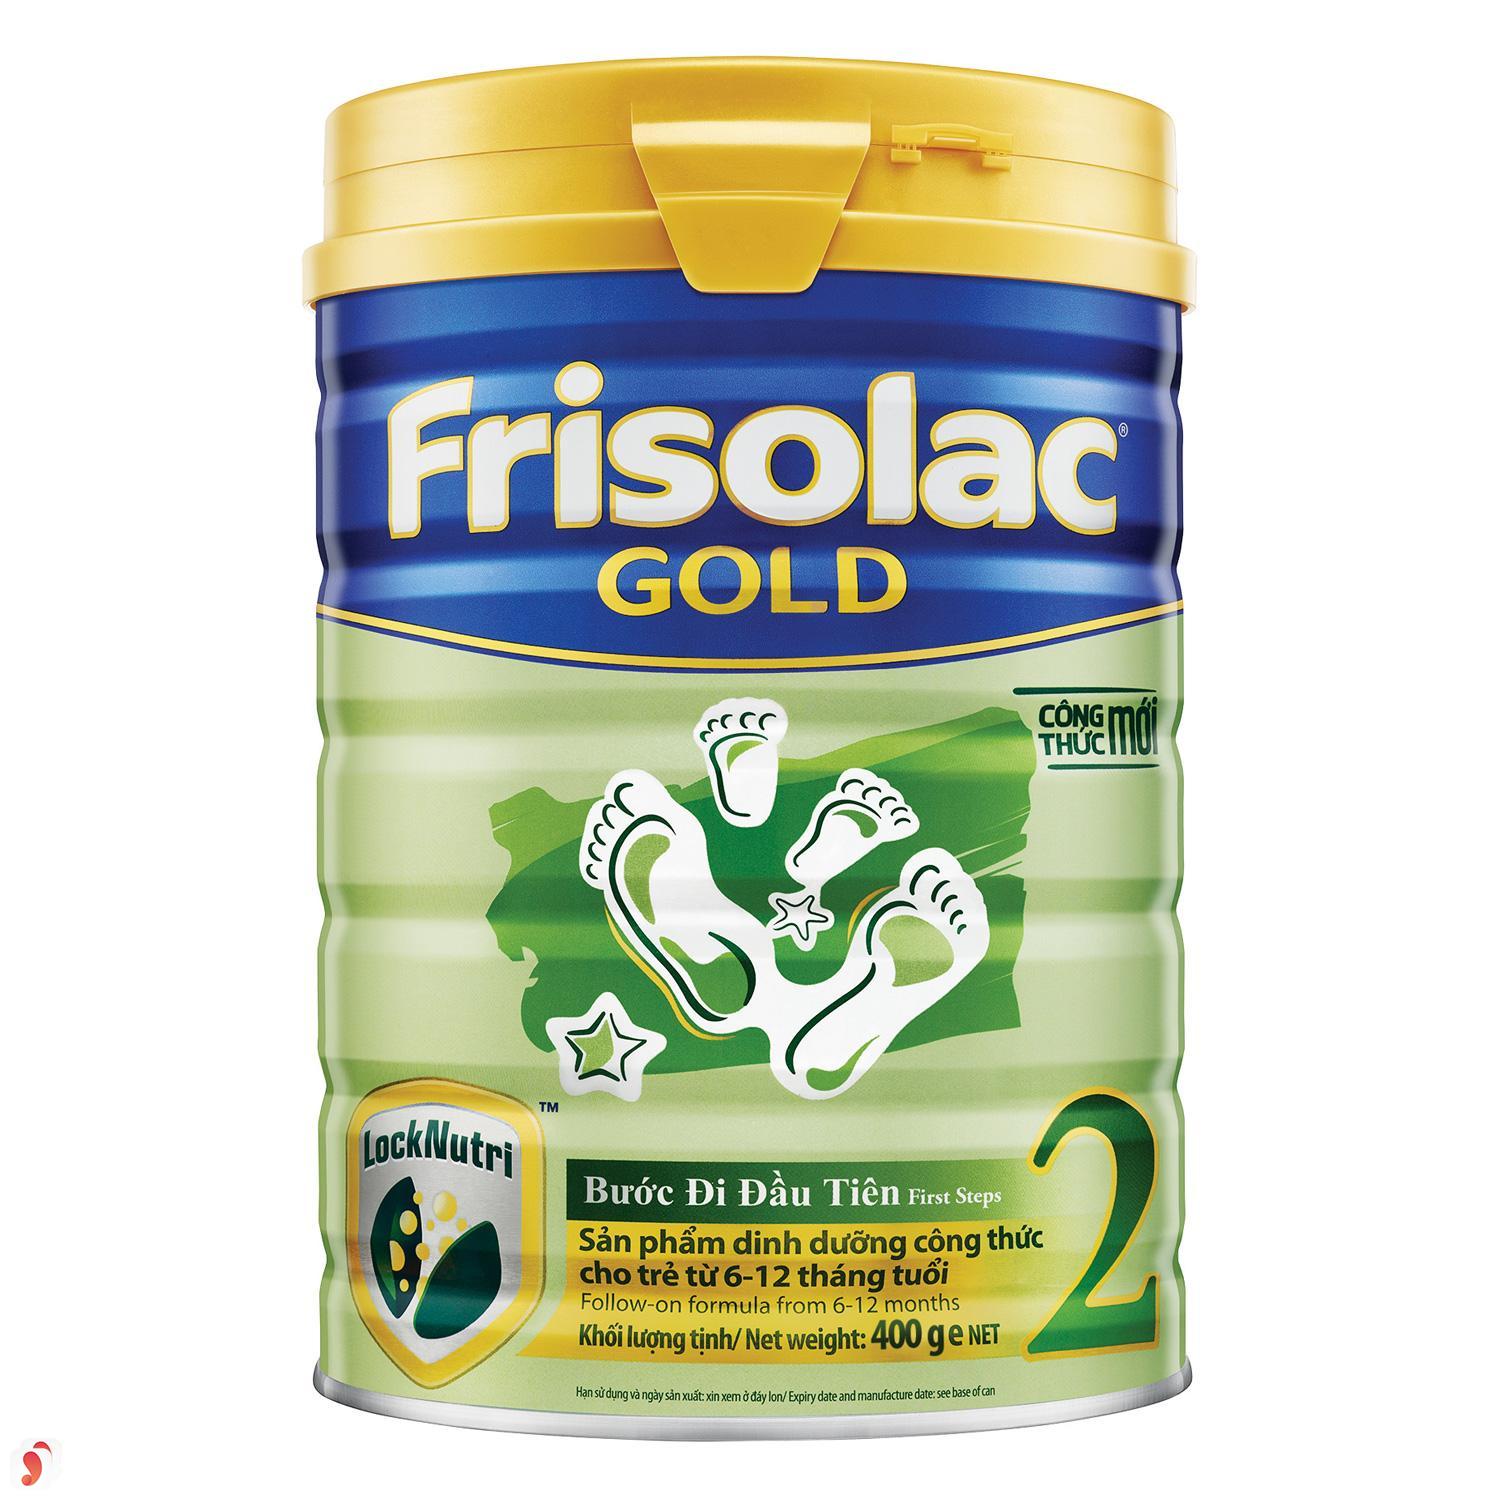 Sữa Frisolac Gold có tốt không 3